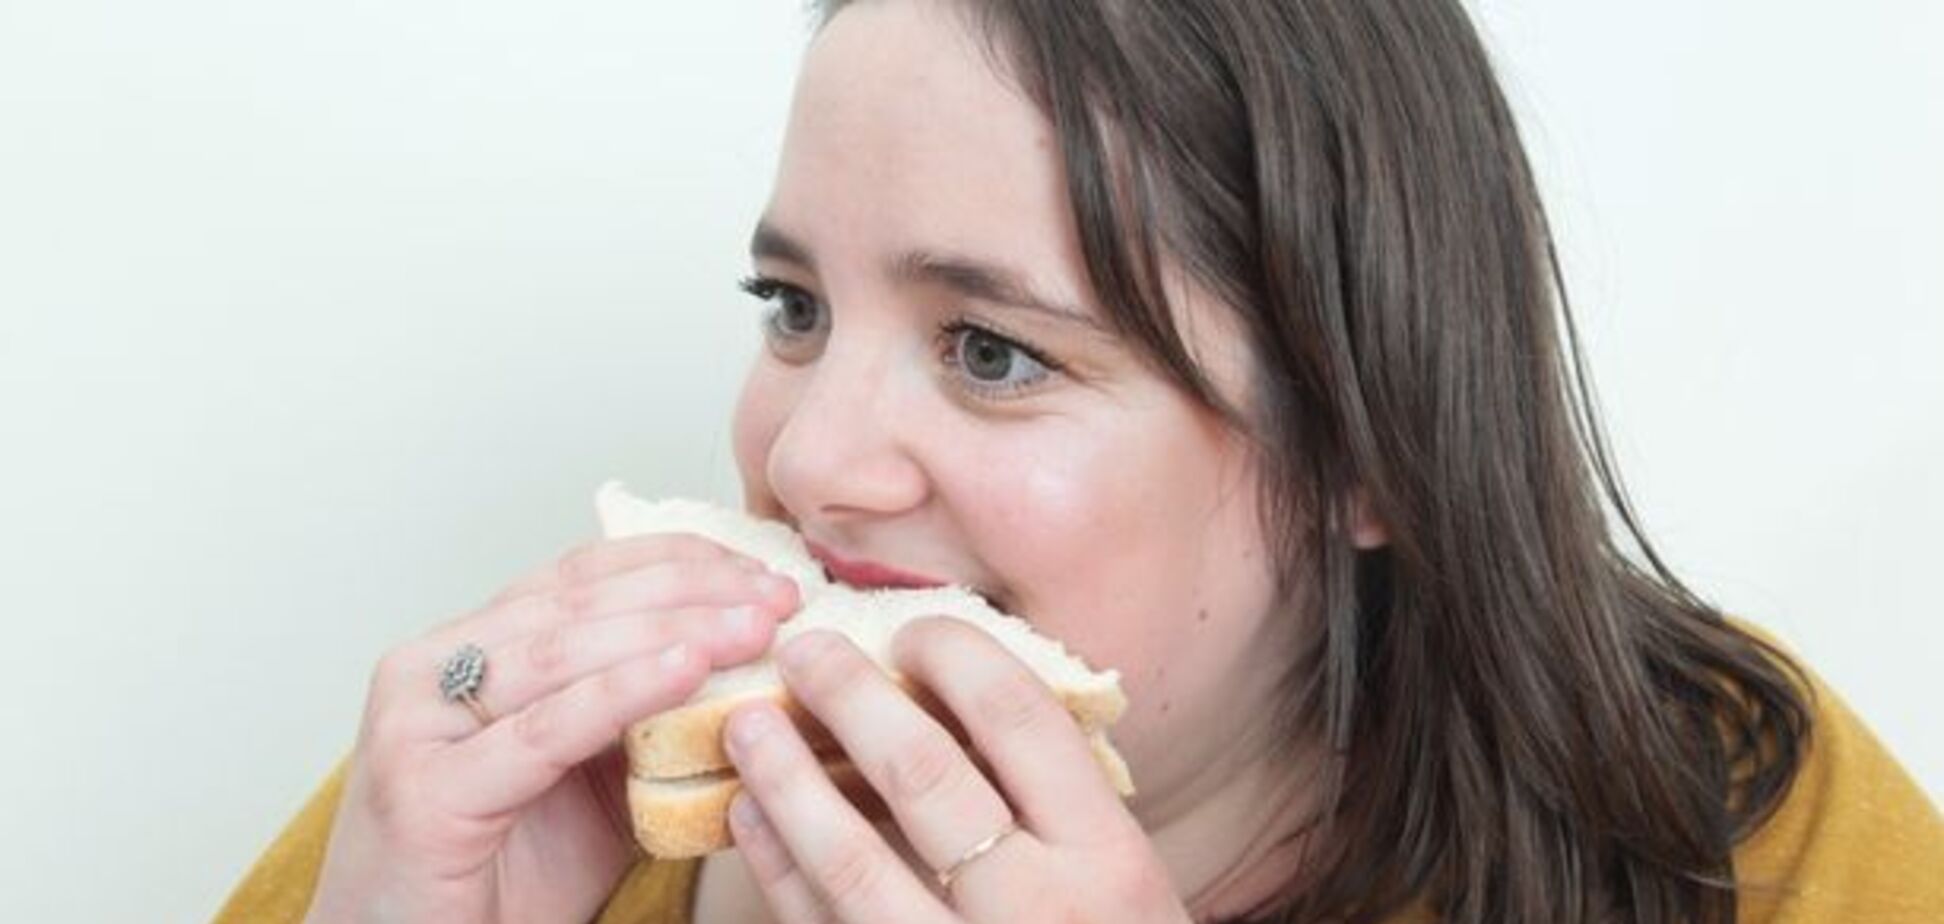 Девушка из-за страха ест только бутерброды: фото после 'диеты'